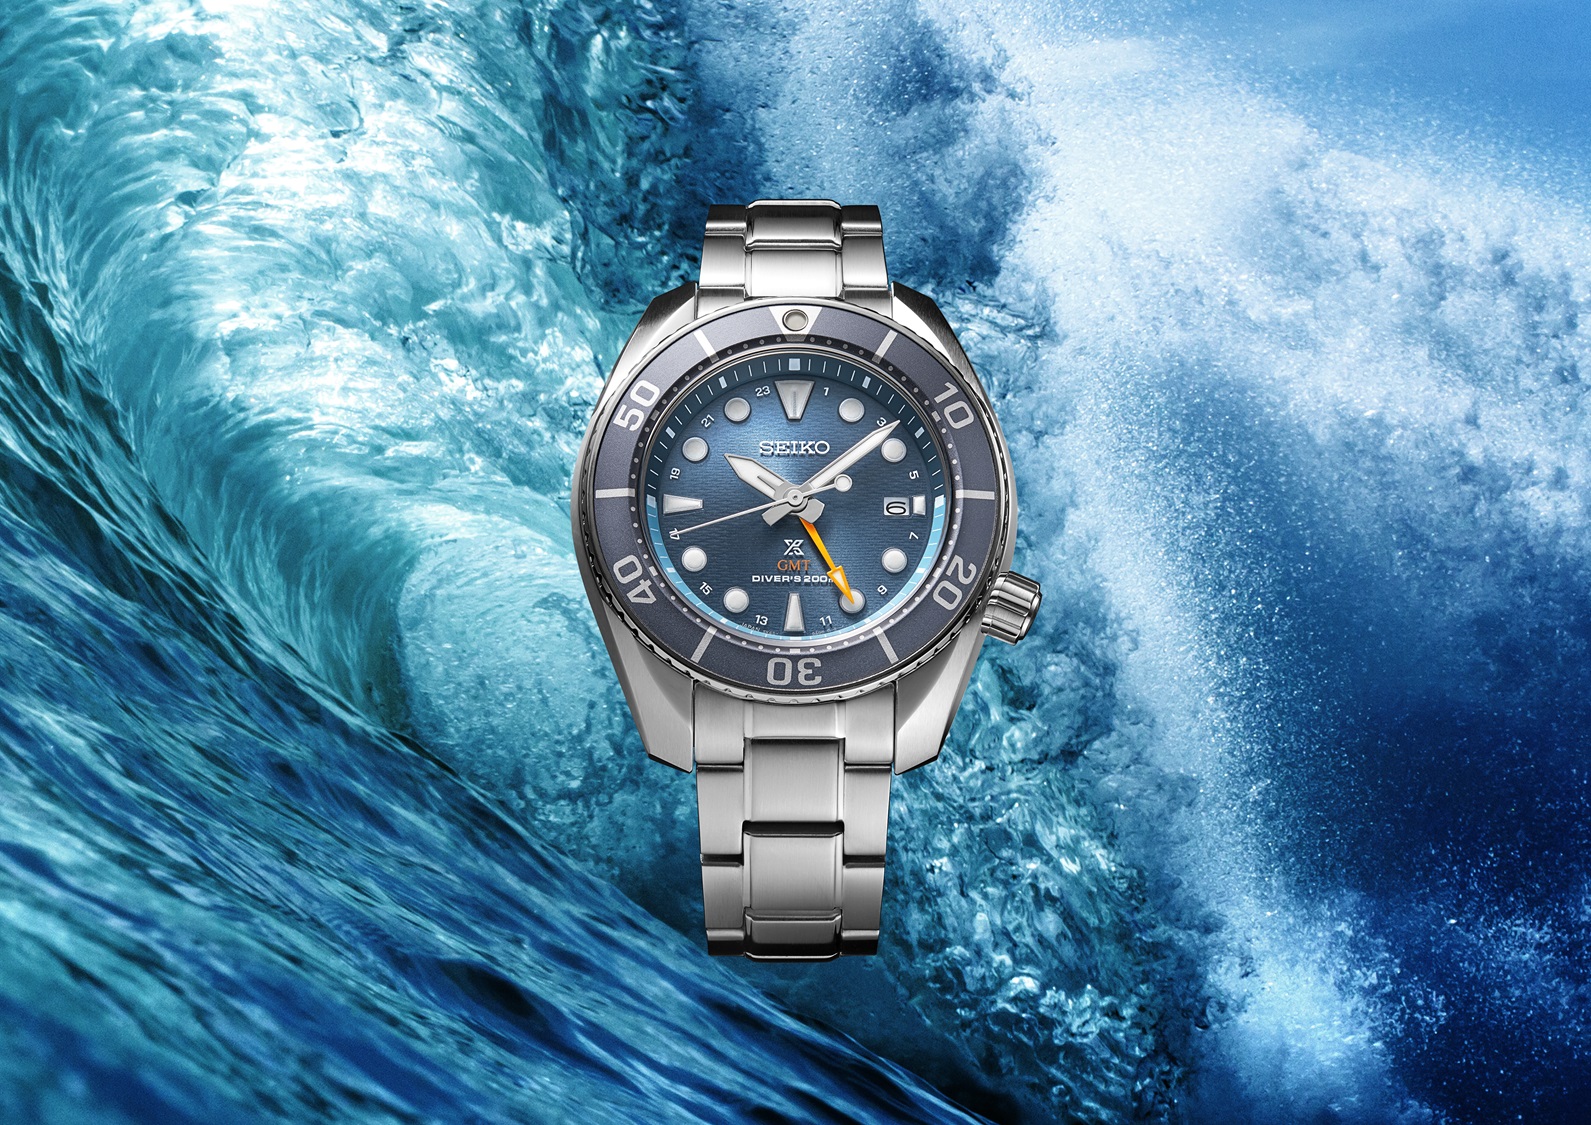 Relógio de mergulho Seiko Prospex Sumo GMT, versão  azul, com imagem de ondas do mar de fundo.